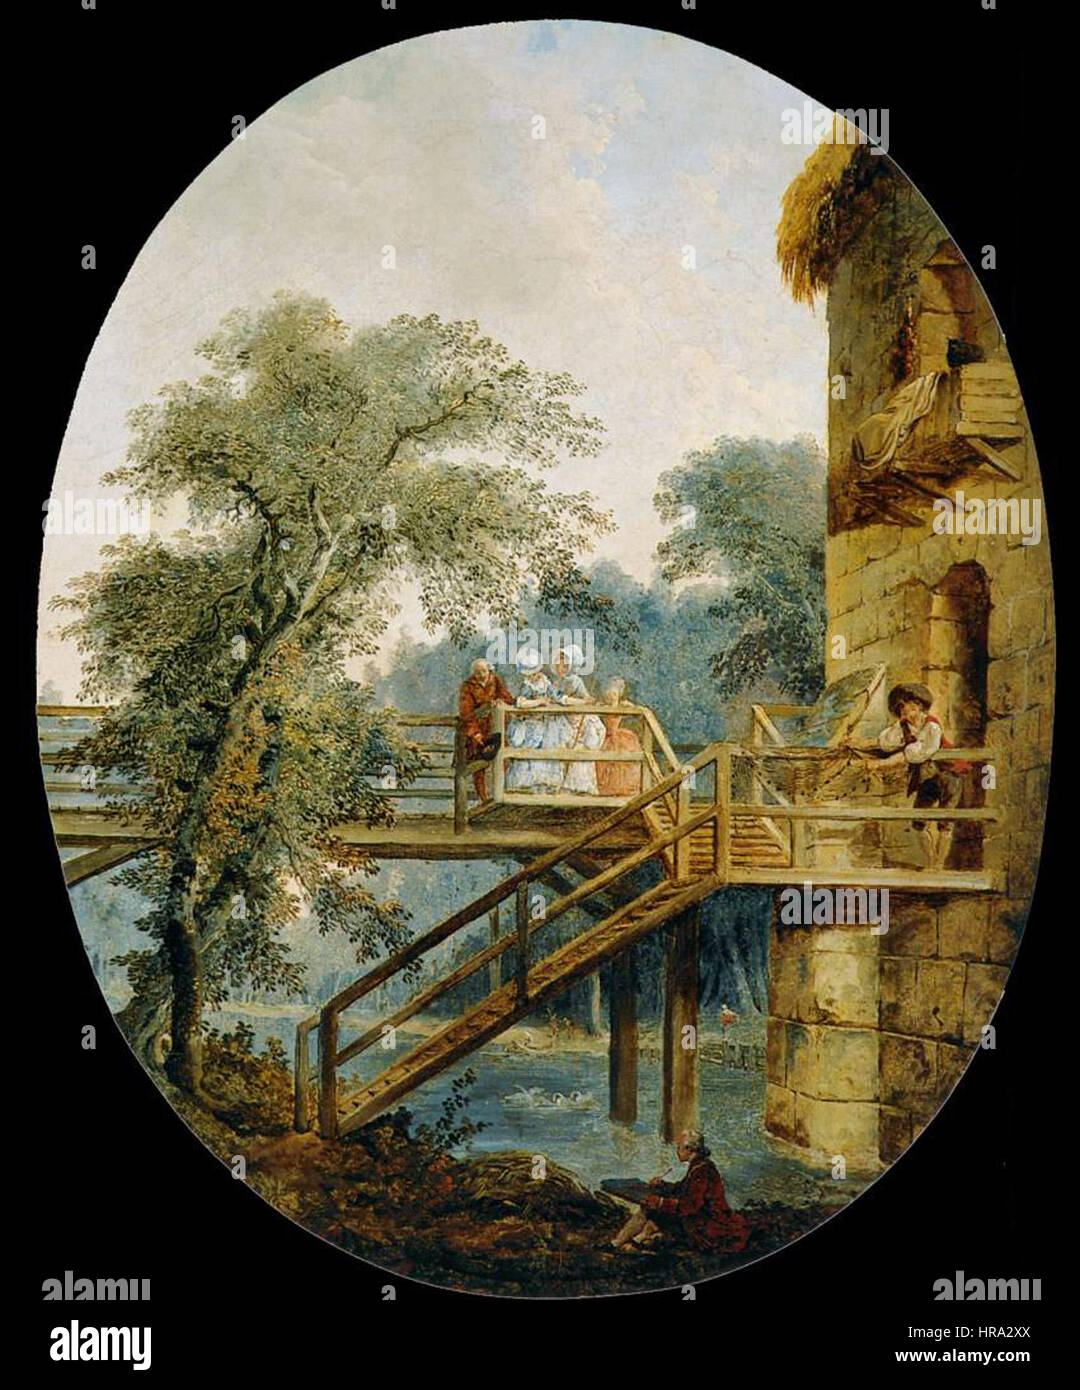 Robert, Hubert - The Footbridge - c. 1775 Stock Photo